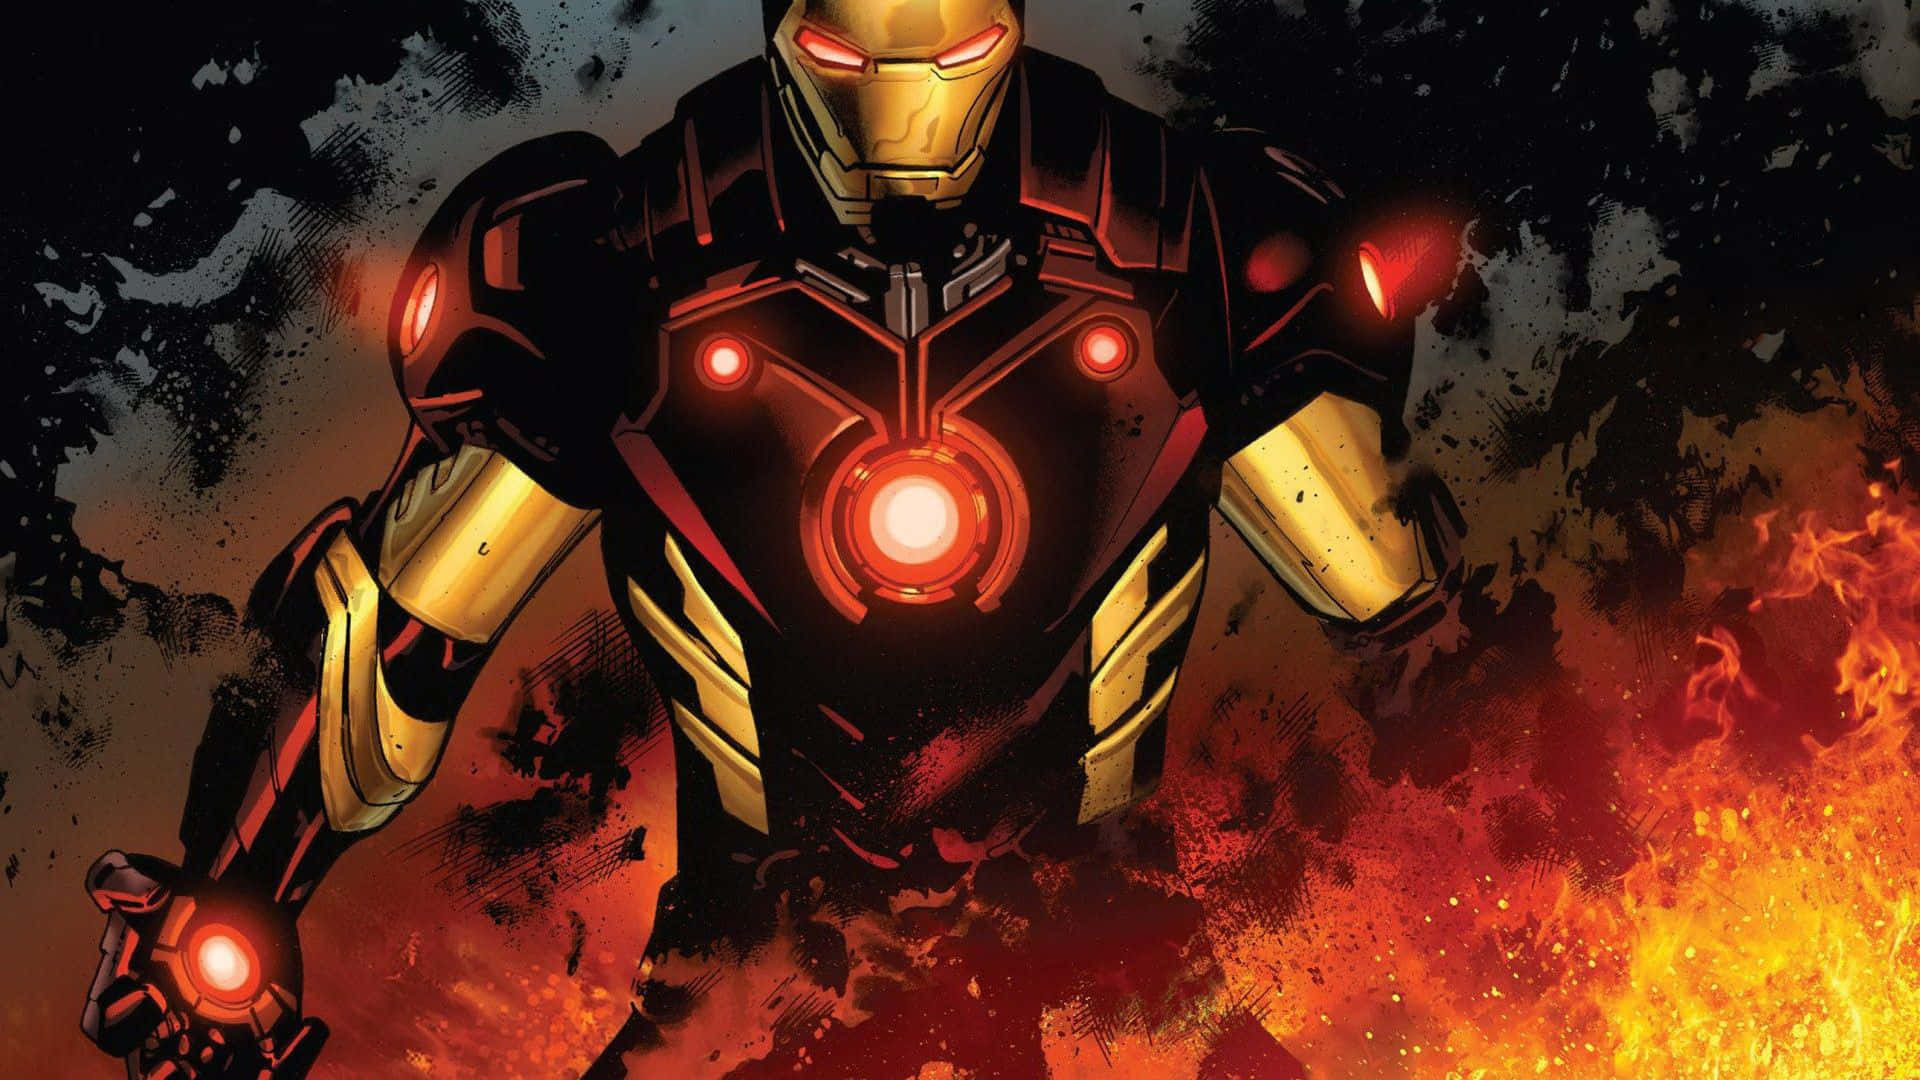 The Iron Man Armor of Tony Stark Wallpaper